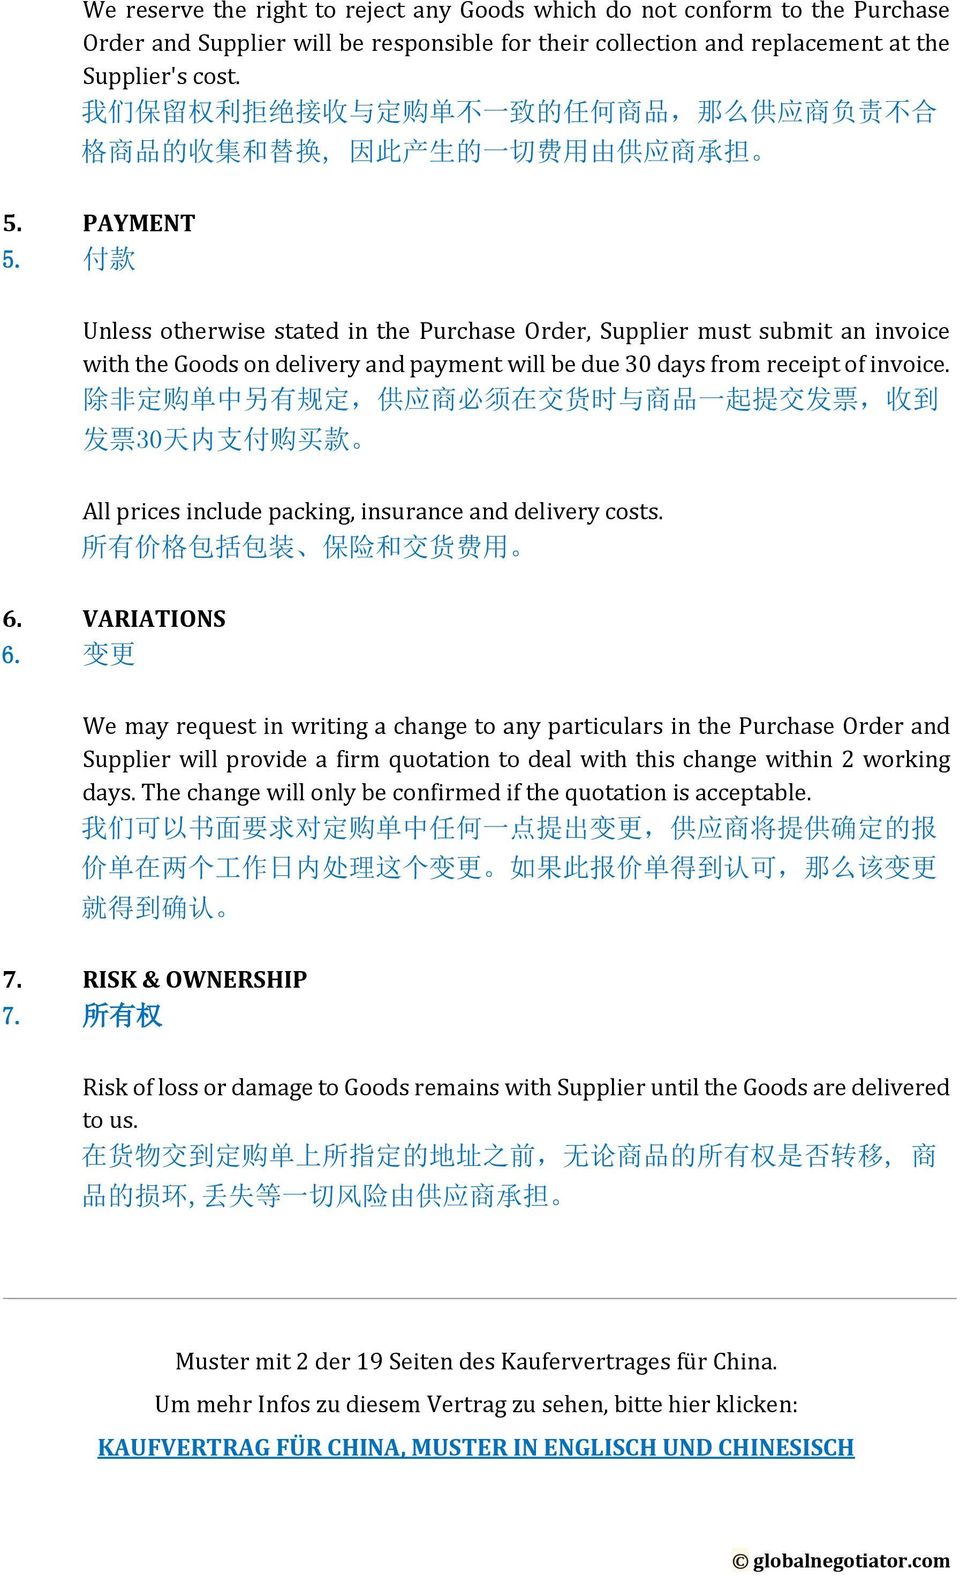 Kaufvertrag Für China Muster Englisch Chinesisch Pdf